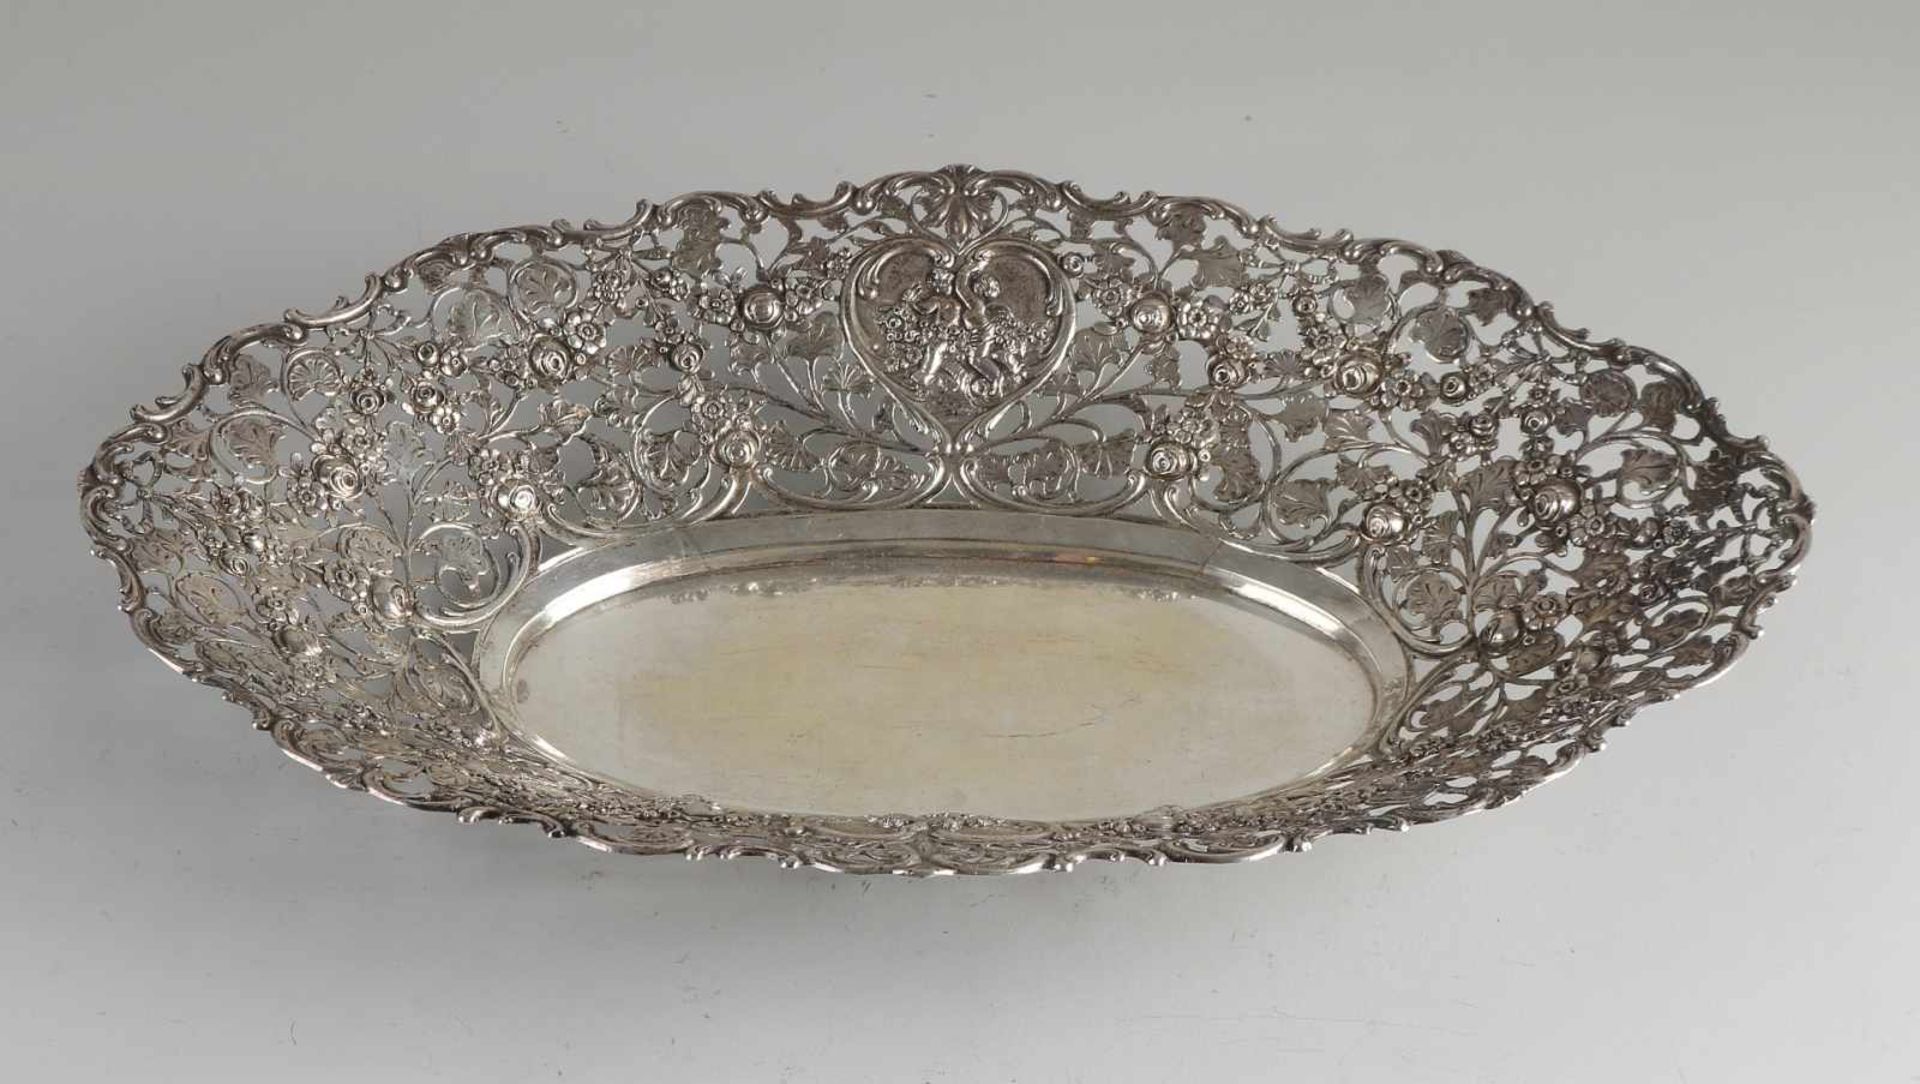 Silberne Schale, 800/000, durchbrochenes ovales Modell, verziert mit Blumendekor und herzförmigen